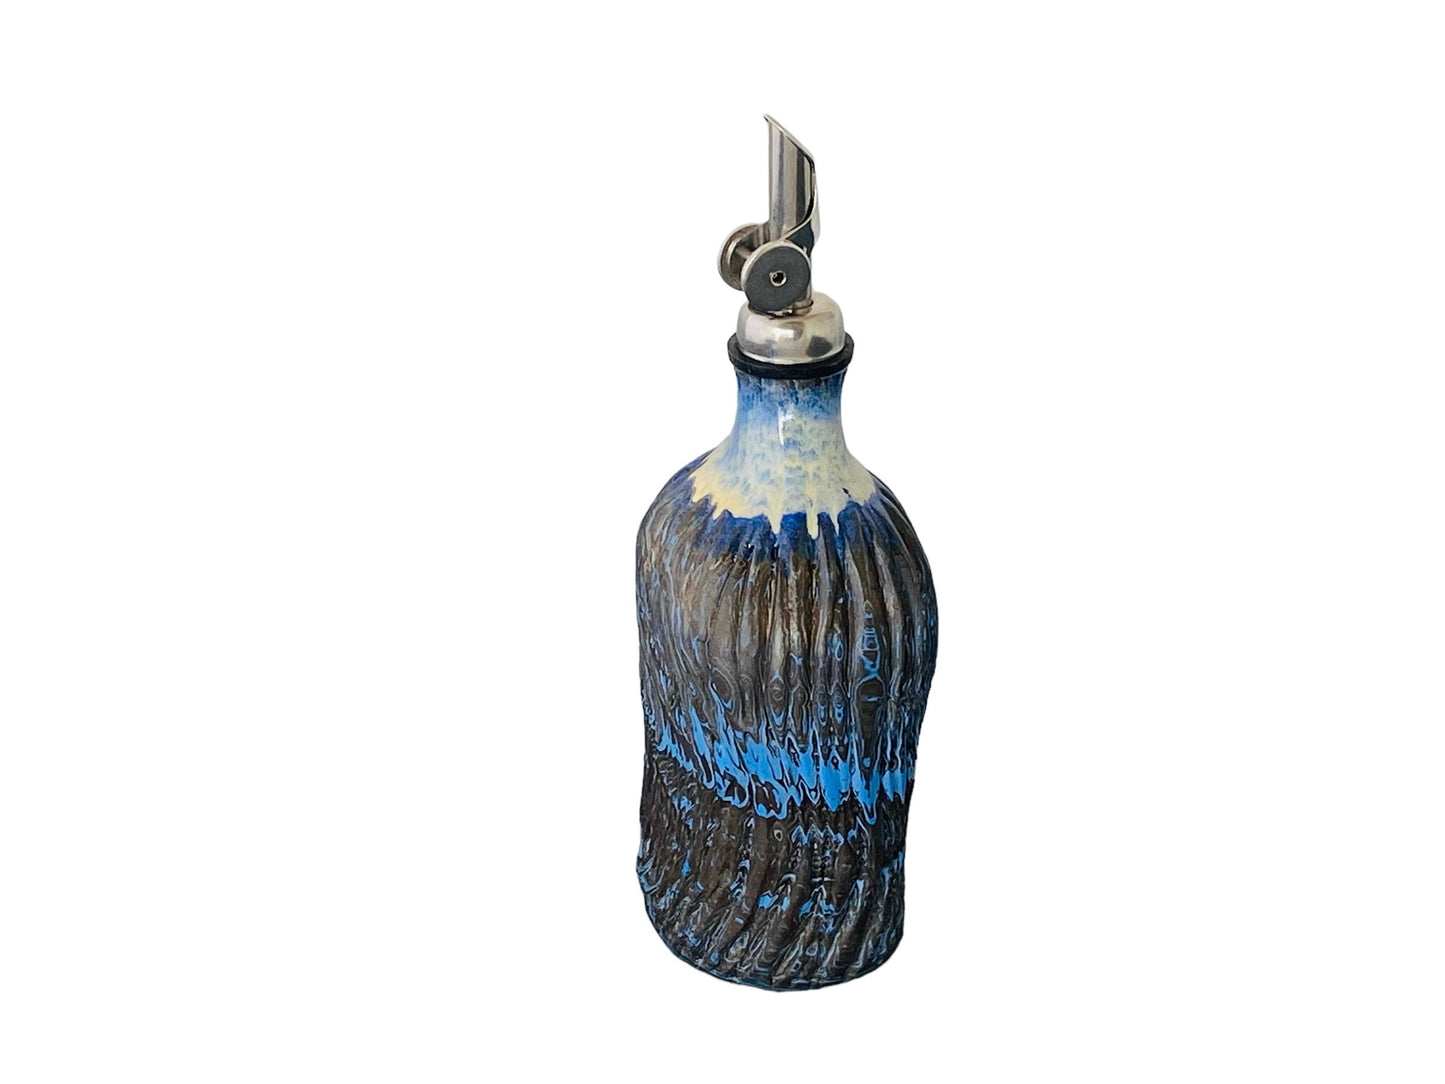 Carved Agateware Ceramic Bottle - Oil Dispenser - Ceramic Oil Bottle  - Oil Bottle - Christmas Gift